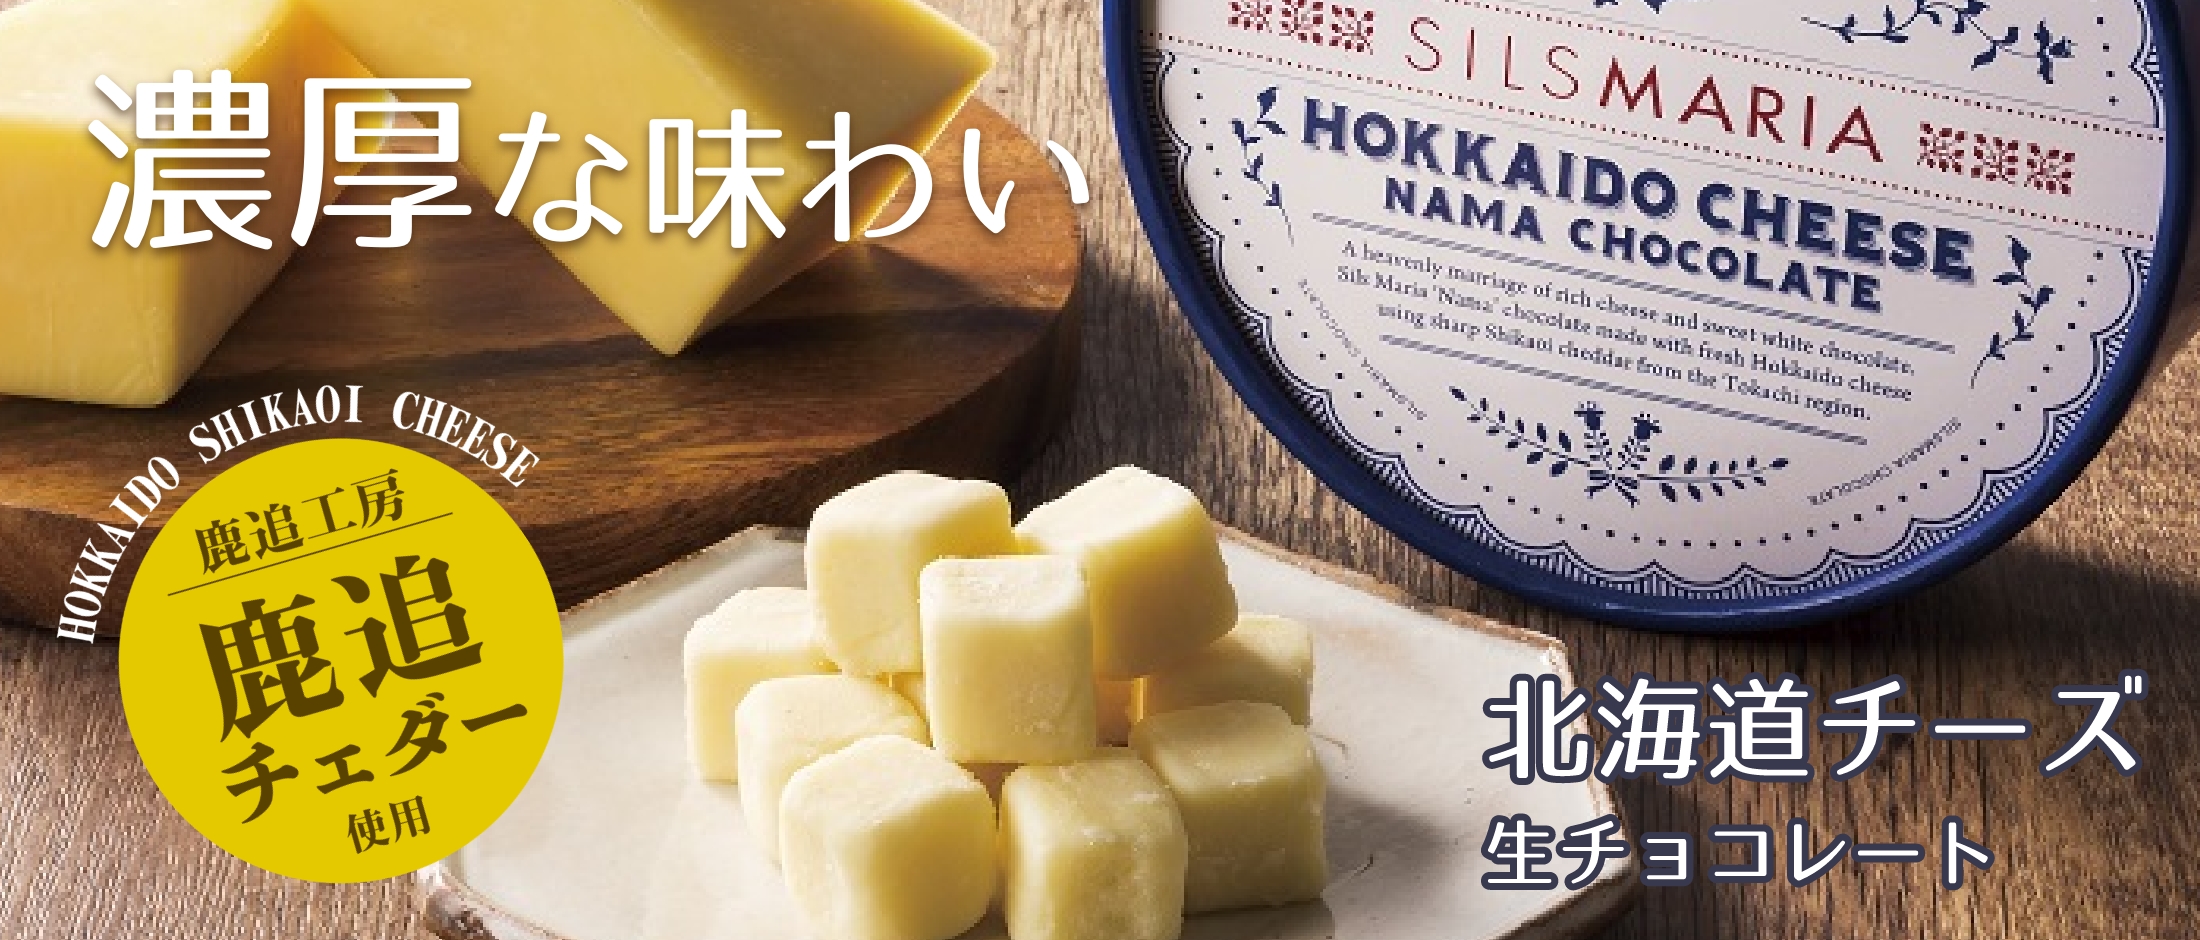 北海道チーズ生チョコレート